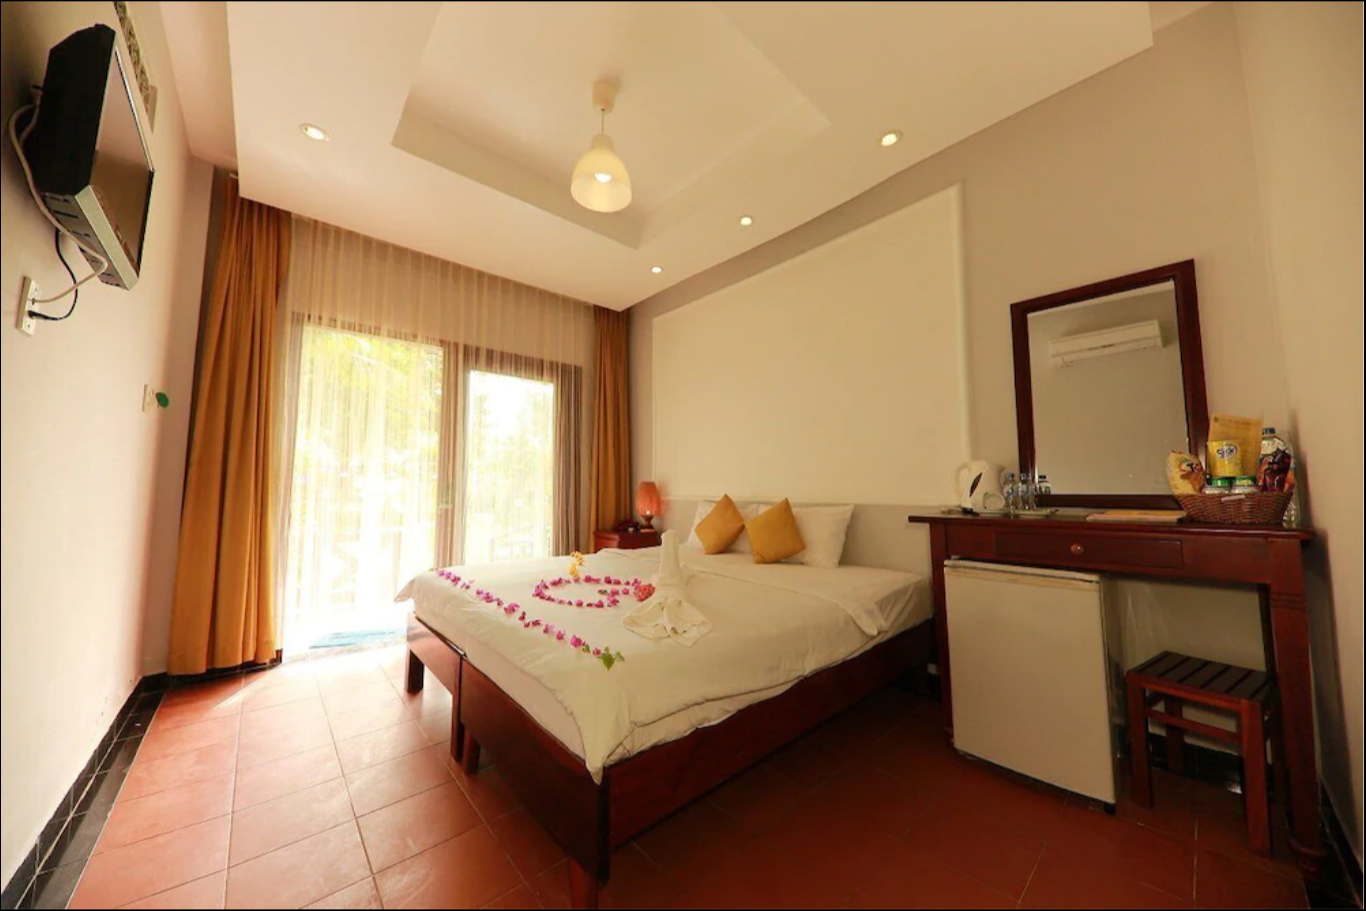 Thái Hòa Resort - Khu nghỉ dưỡng trữ tình tại Phan Thiết